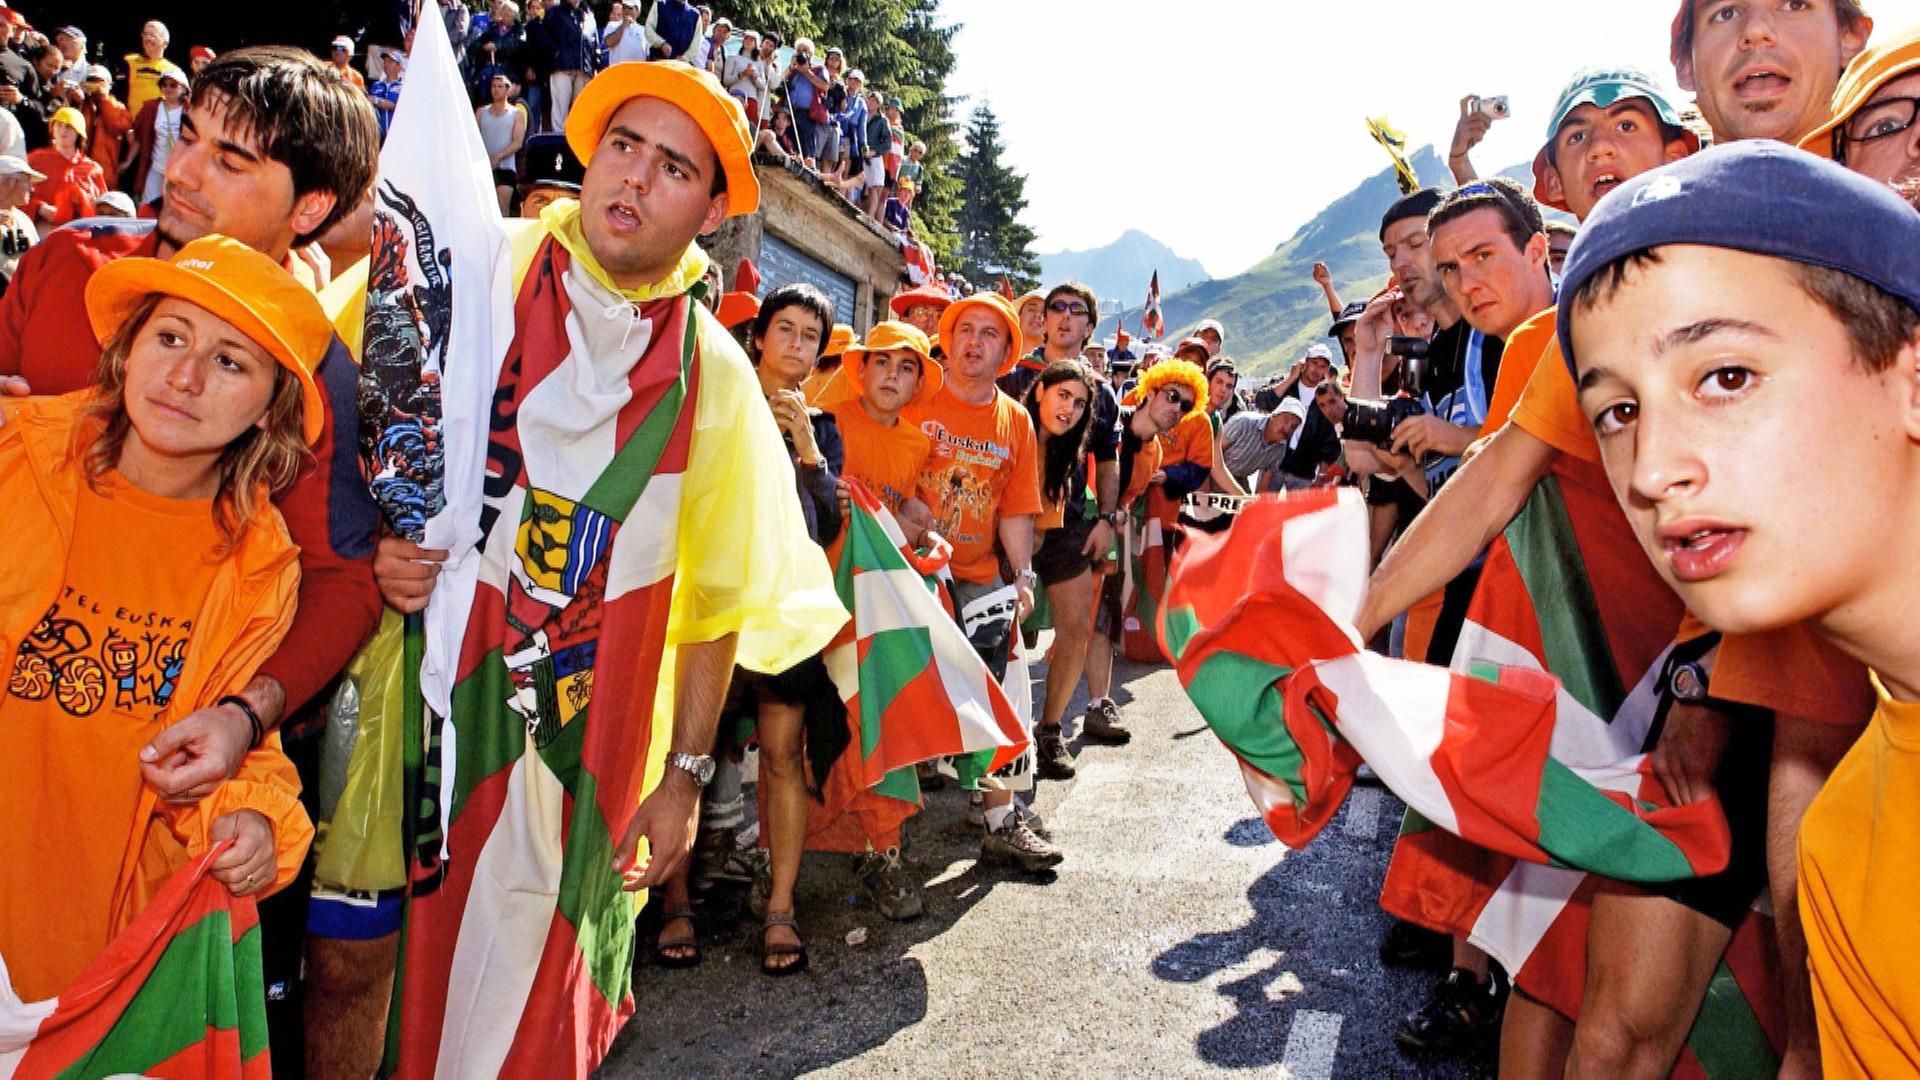 Ein Bildband feiert die Tour de France als größten Warteraum der Welt